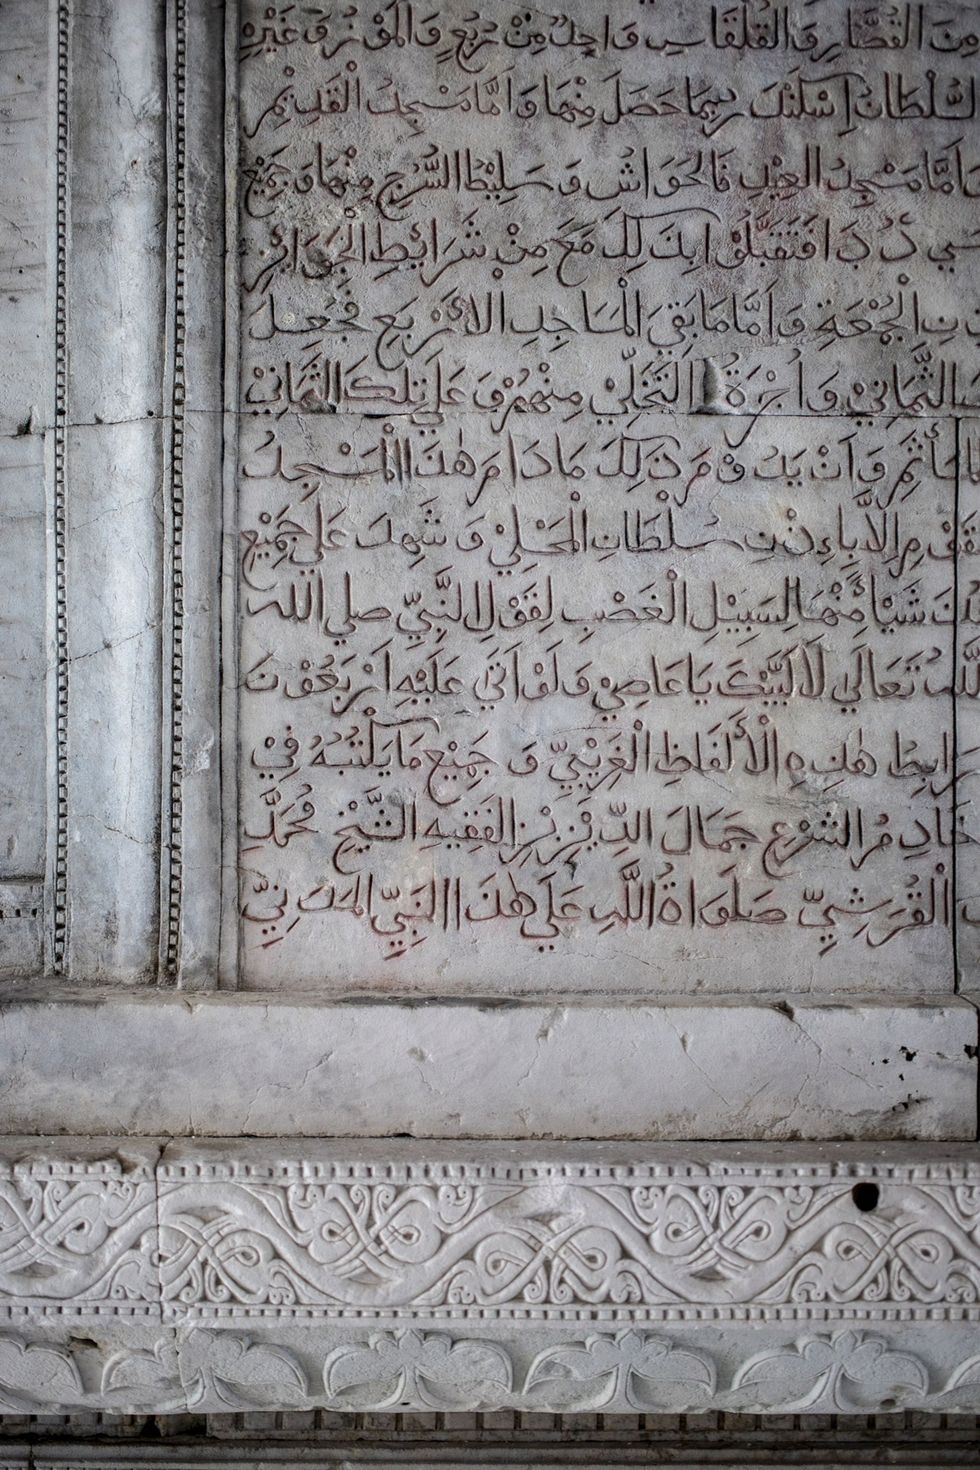 De Oude Vrijdagmoskee is een van de oudste en fraaist gedecoreerde gebedshuizen van Mal Op deze detailfoto is een stuk koraalsteen te zien met een inscriptie uit de koran